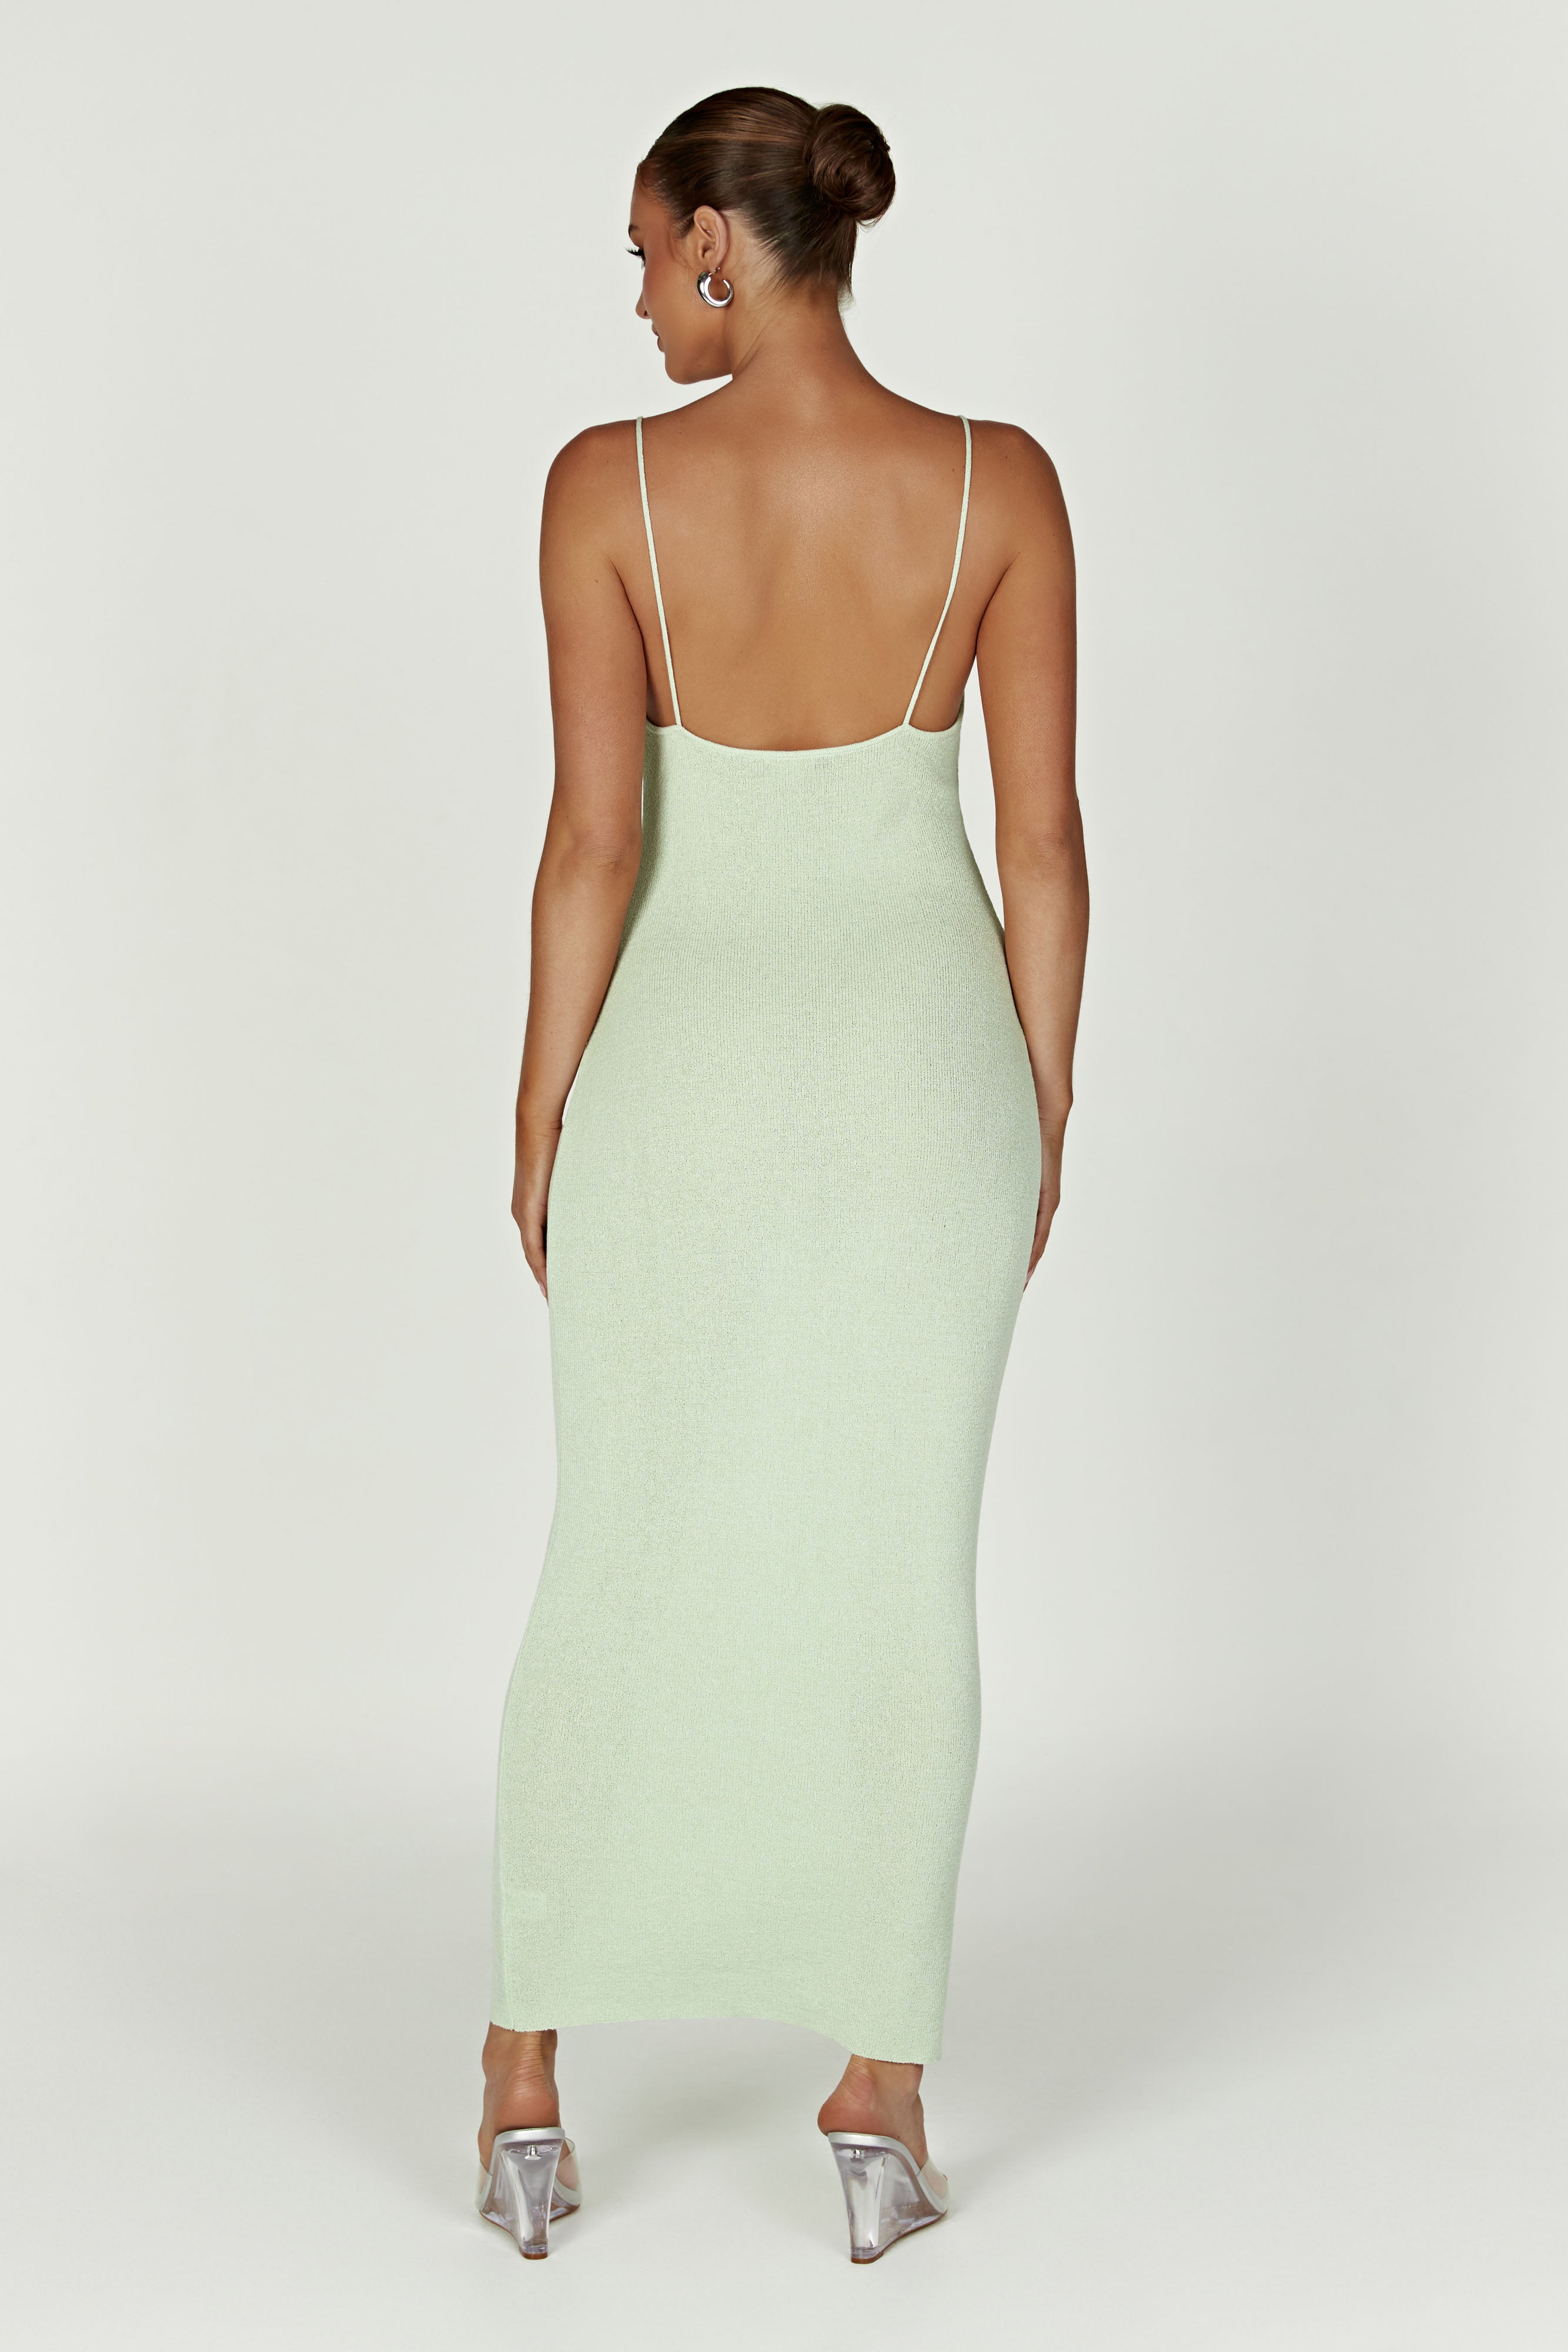 Magnolia Knit Midi Dress – Pistachio Green